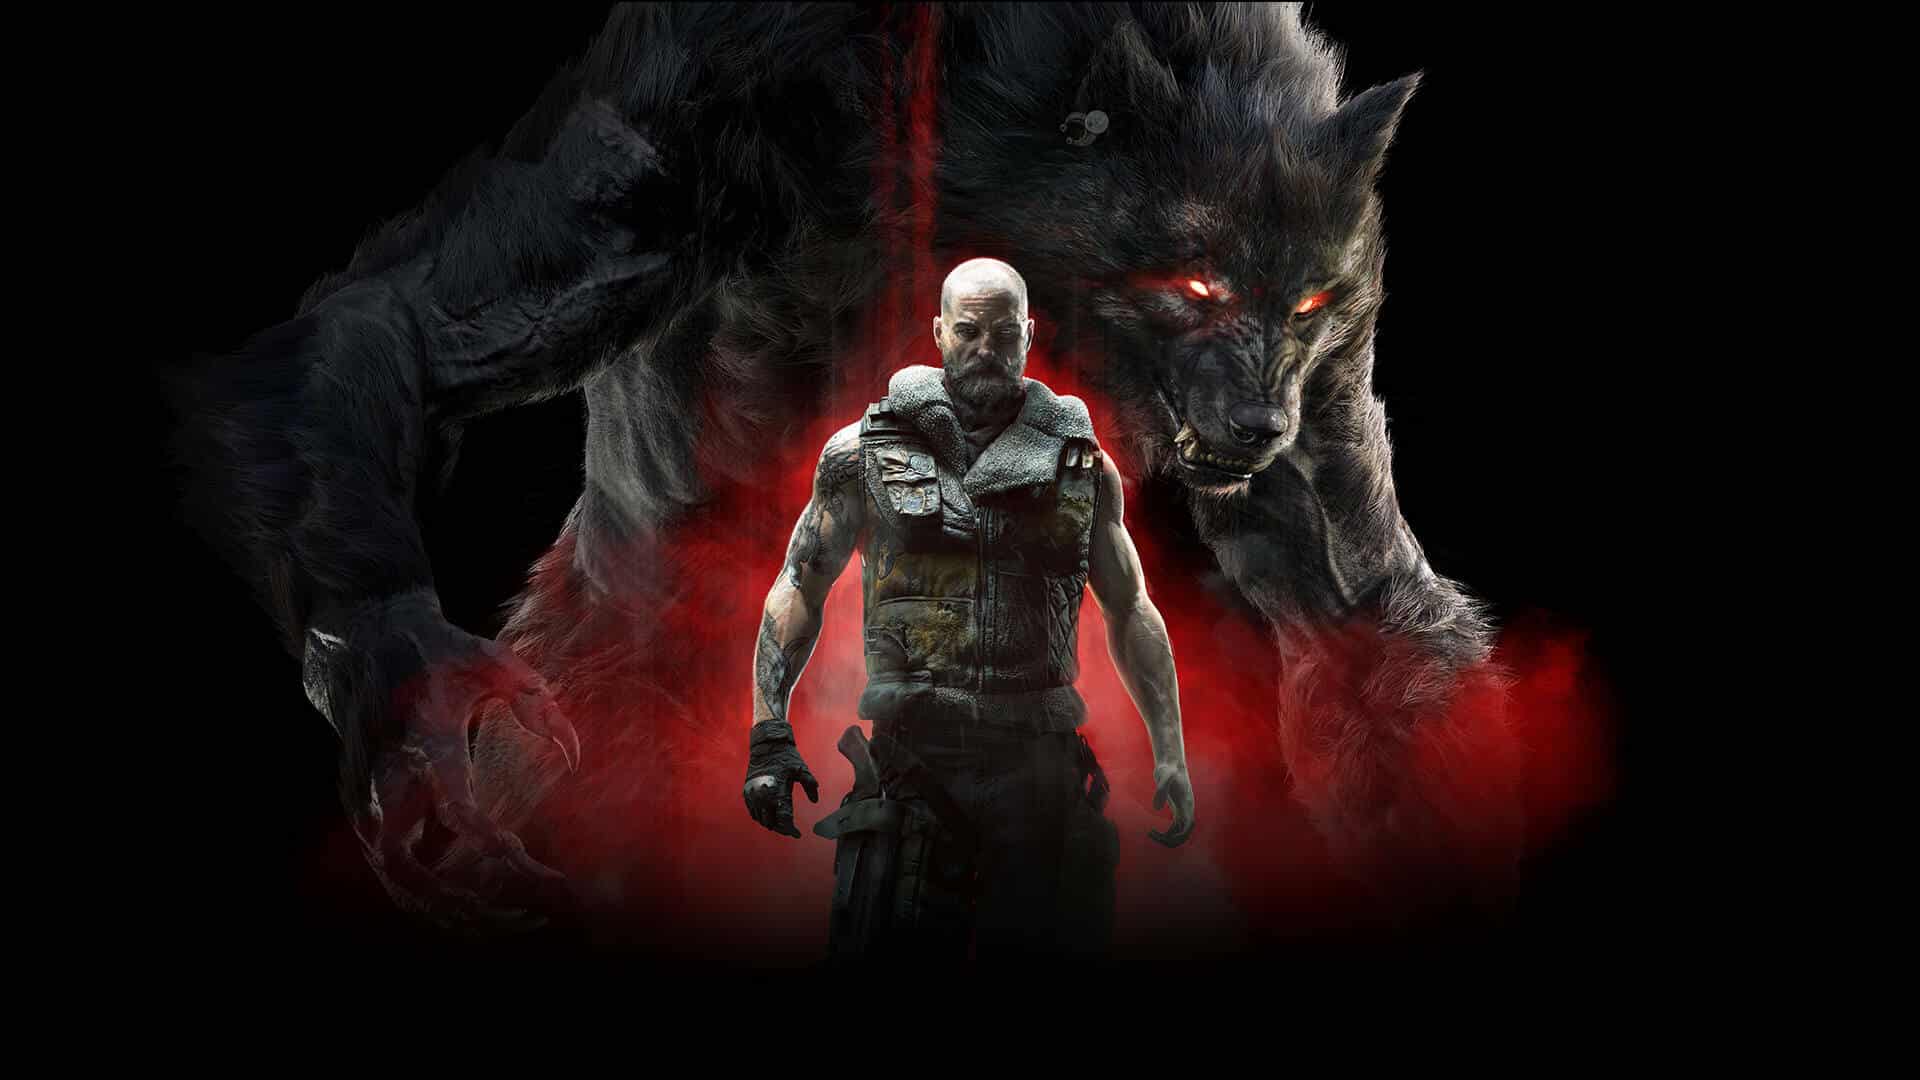 Werewolf The Apocalypse: Earthblood